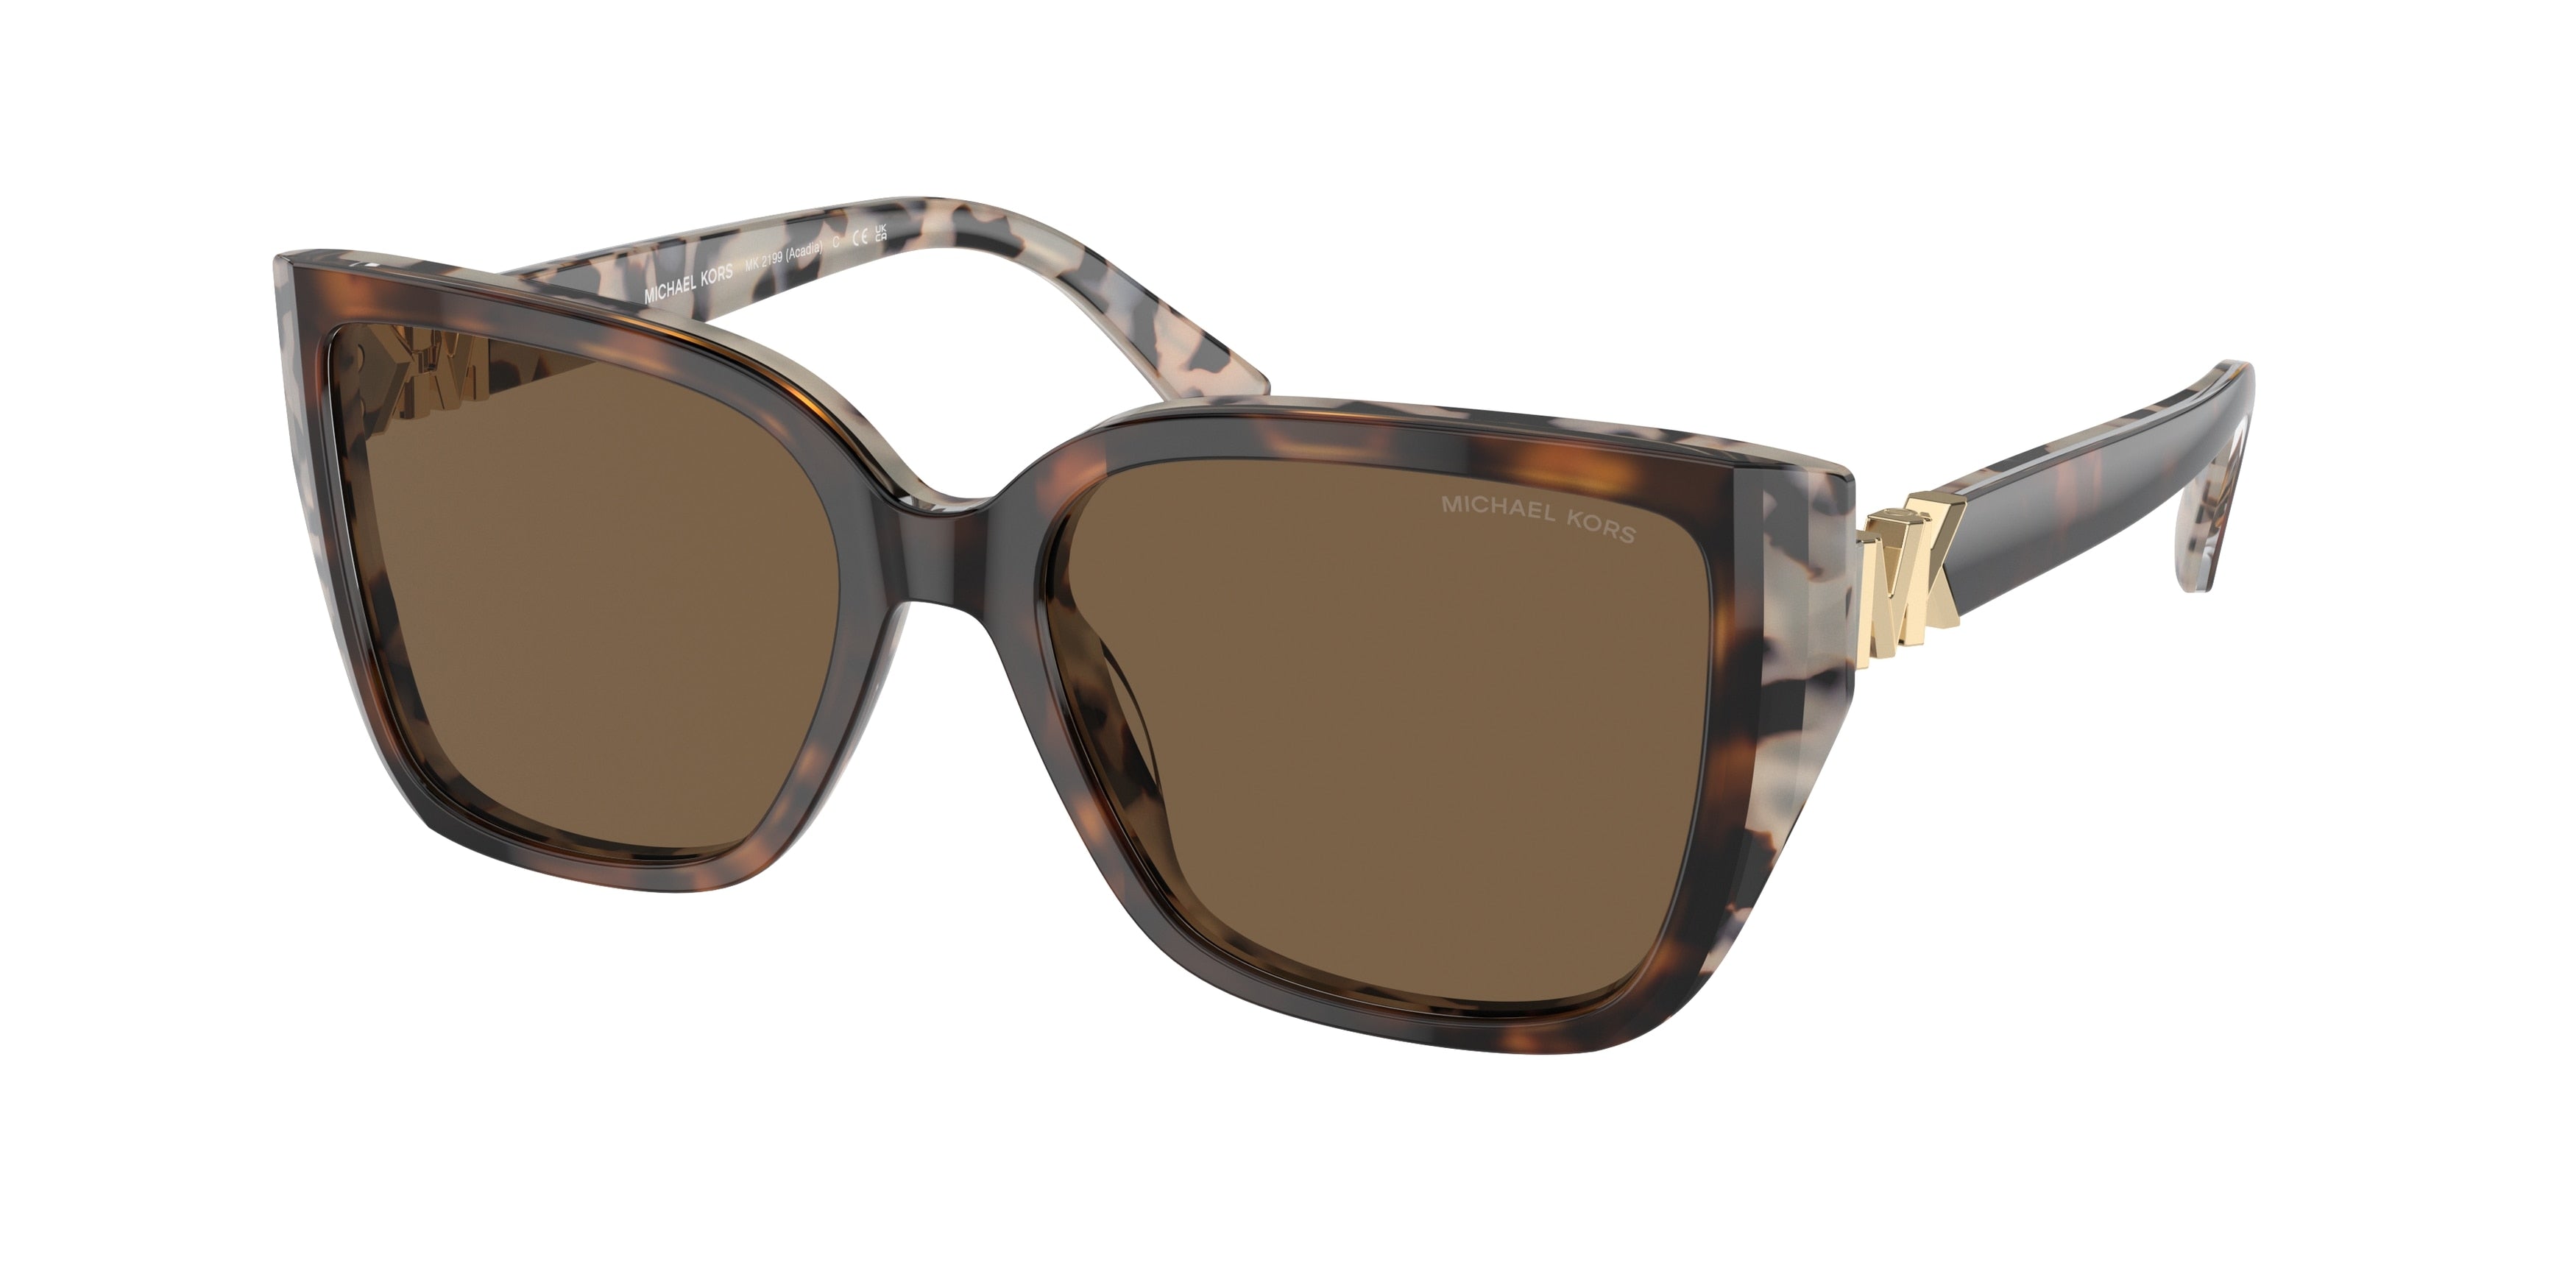 Michael Kors ACADIA MK2199 Rectangle Sunglasses  395173-Bi Layer Dark/Cream Tortoise 55-135-17 - Color Map Brown Solid